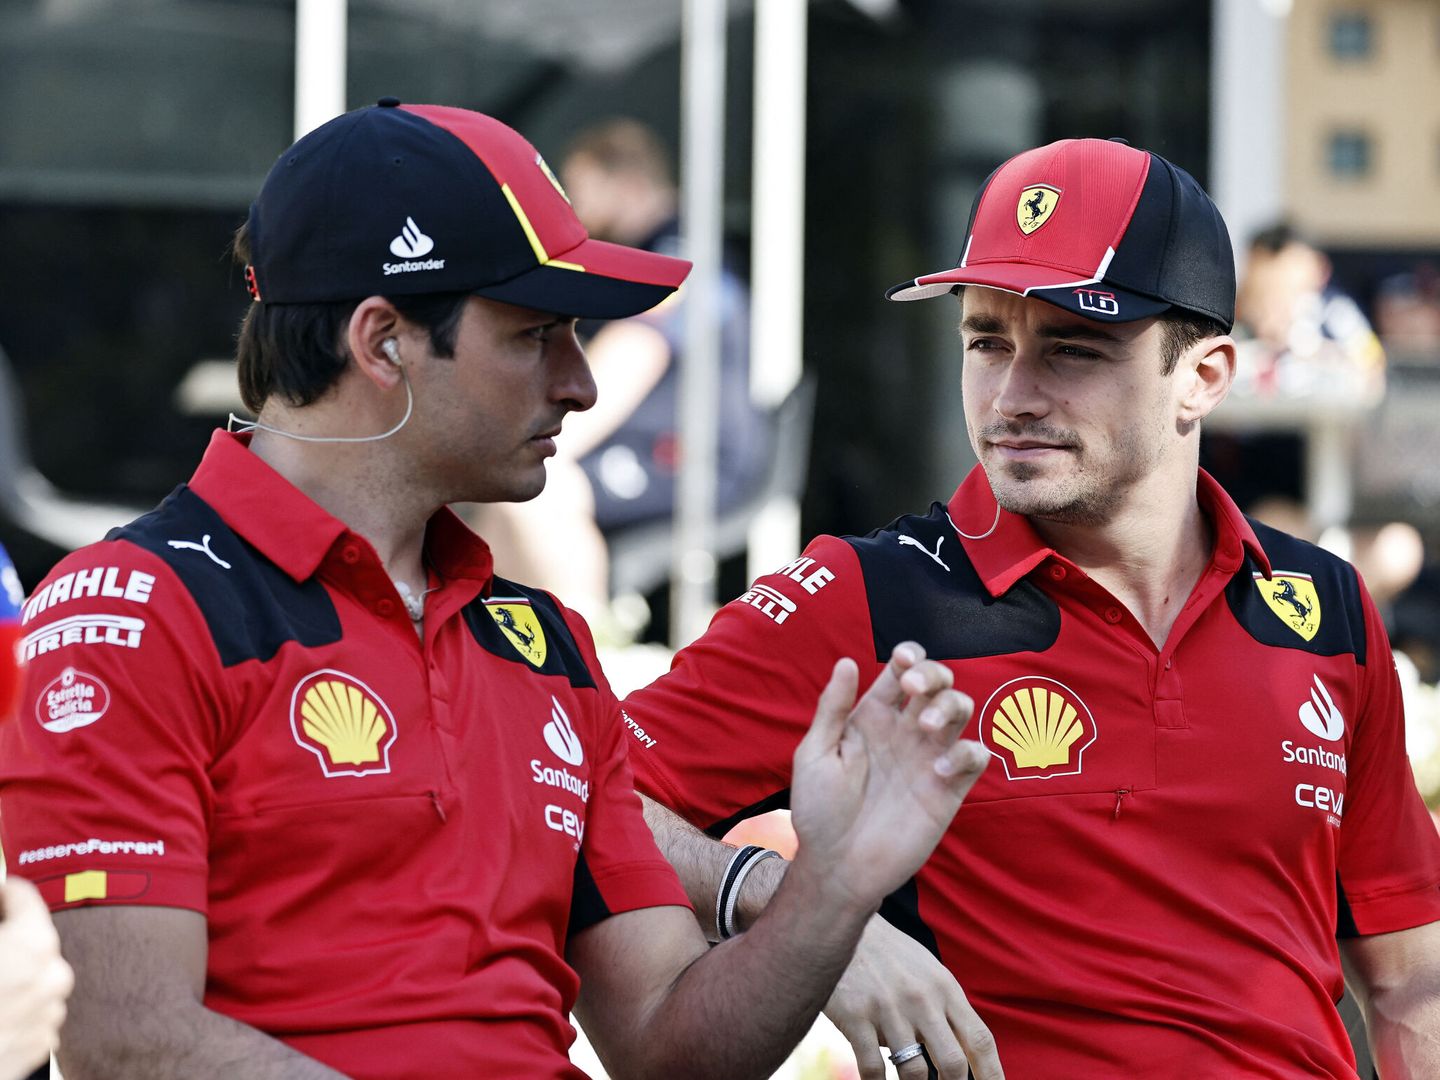 Vasseur trata de que tanto Sainz como Leclerc, tengan la menor exposición posible, pero igual podría ser un error de cálculo. (Reuters/ Hamad I Mohammed)